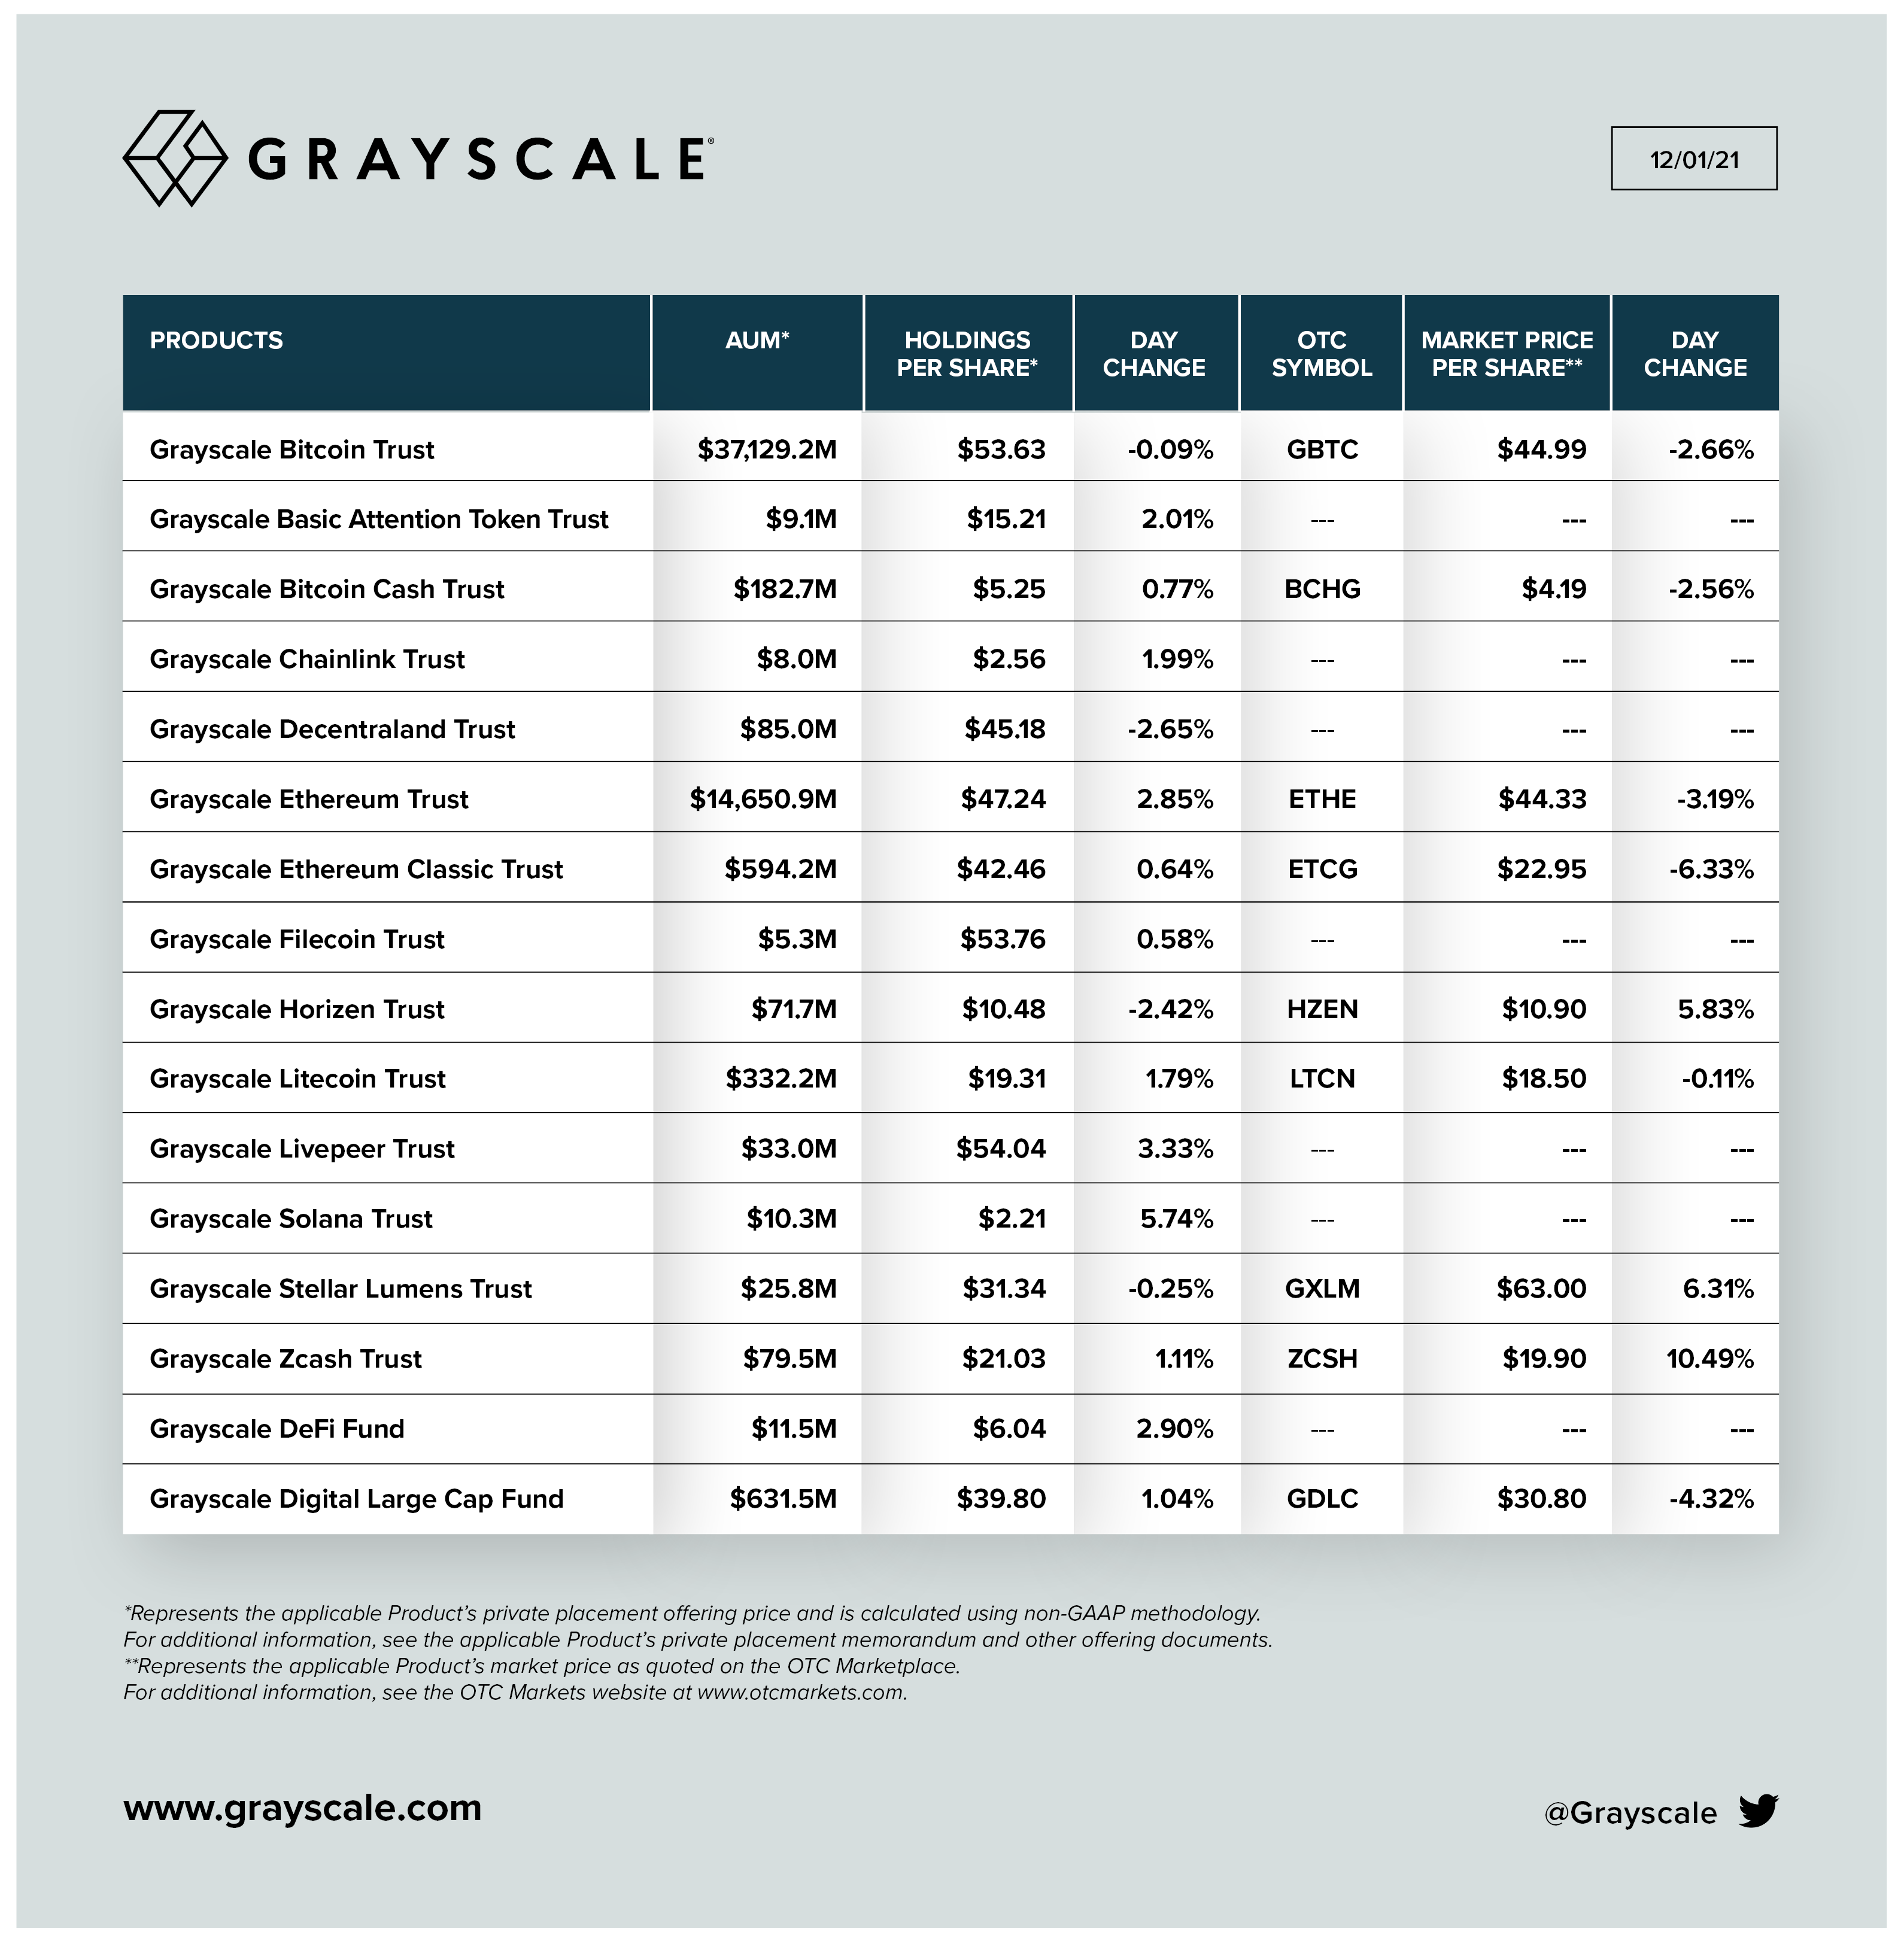 1641135811 468 Grayscale AUM giảm 19 khi giá Bitcoin giảm